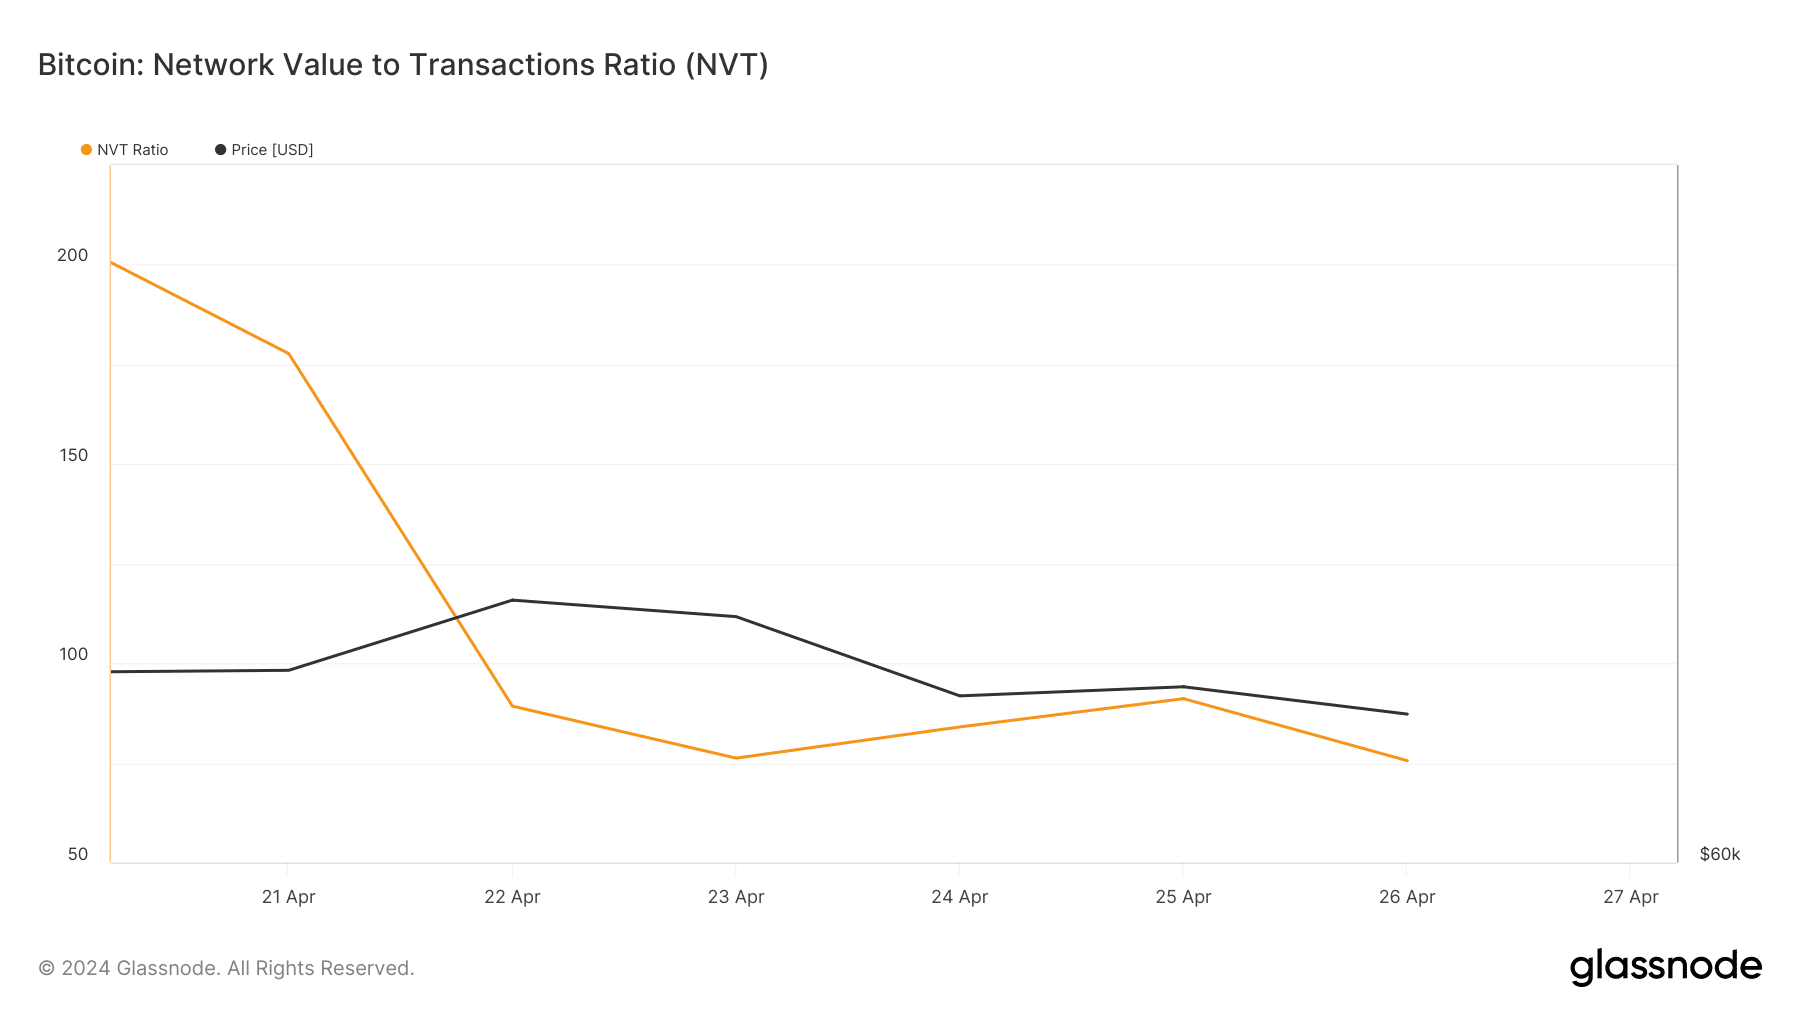 BTCのNVT比率が低下